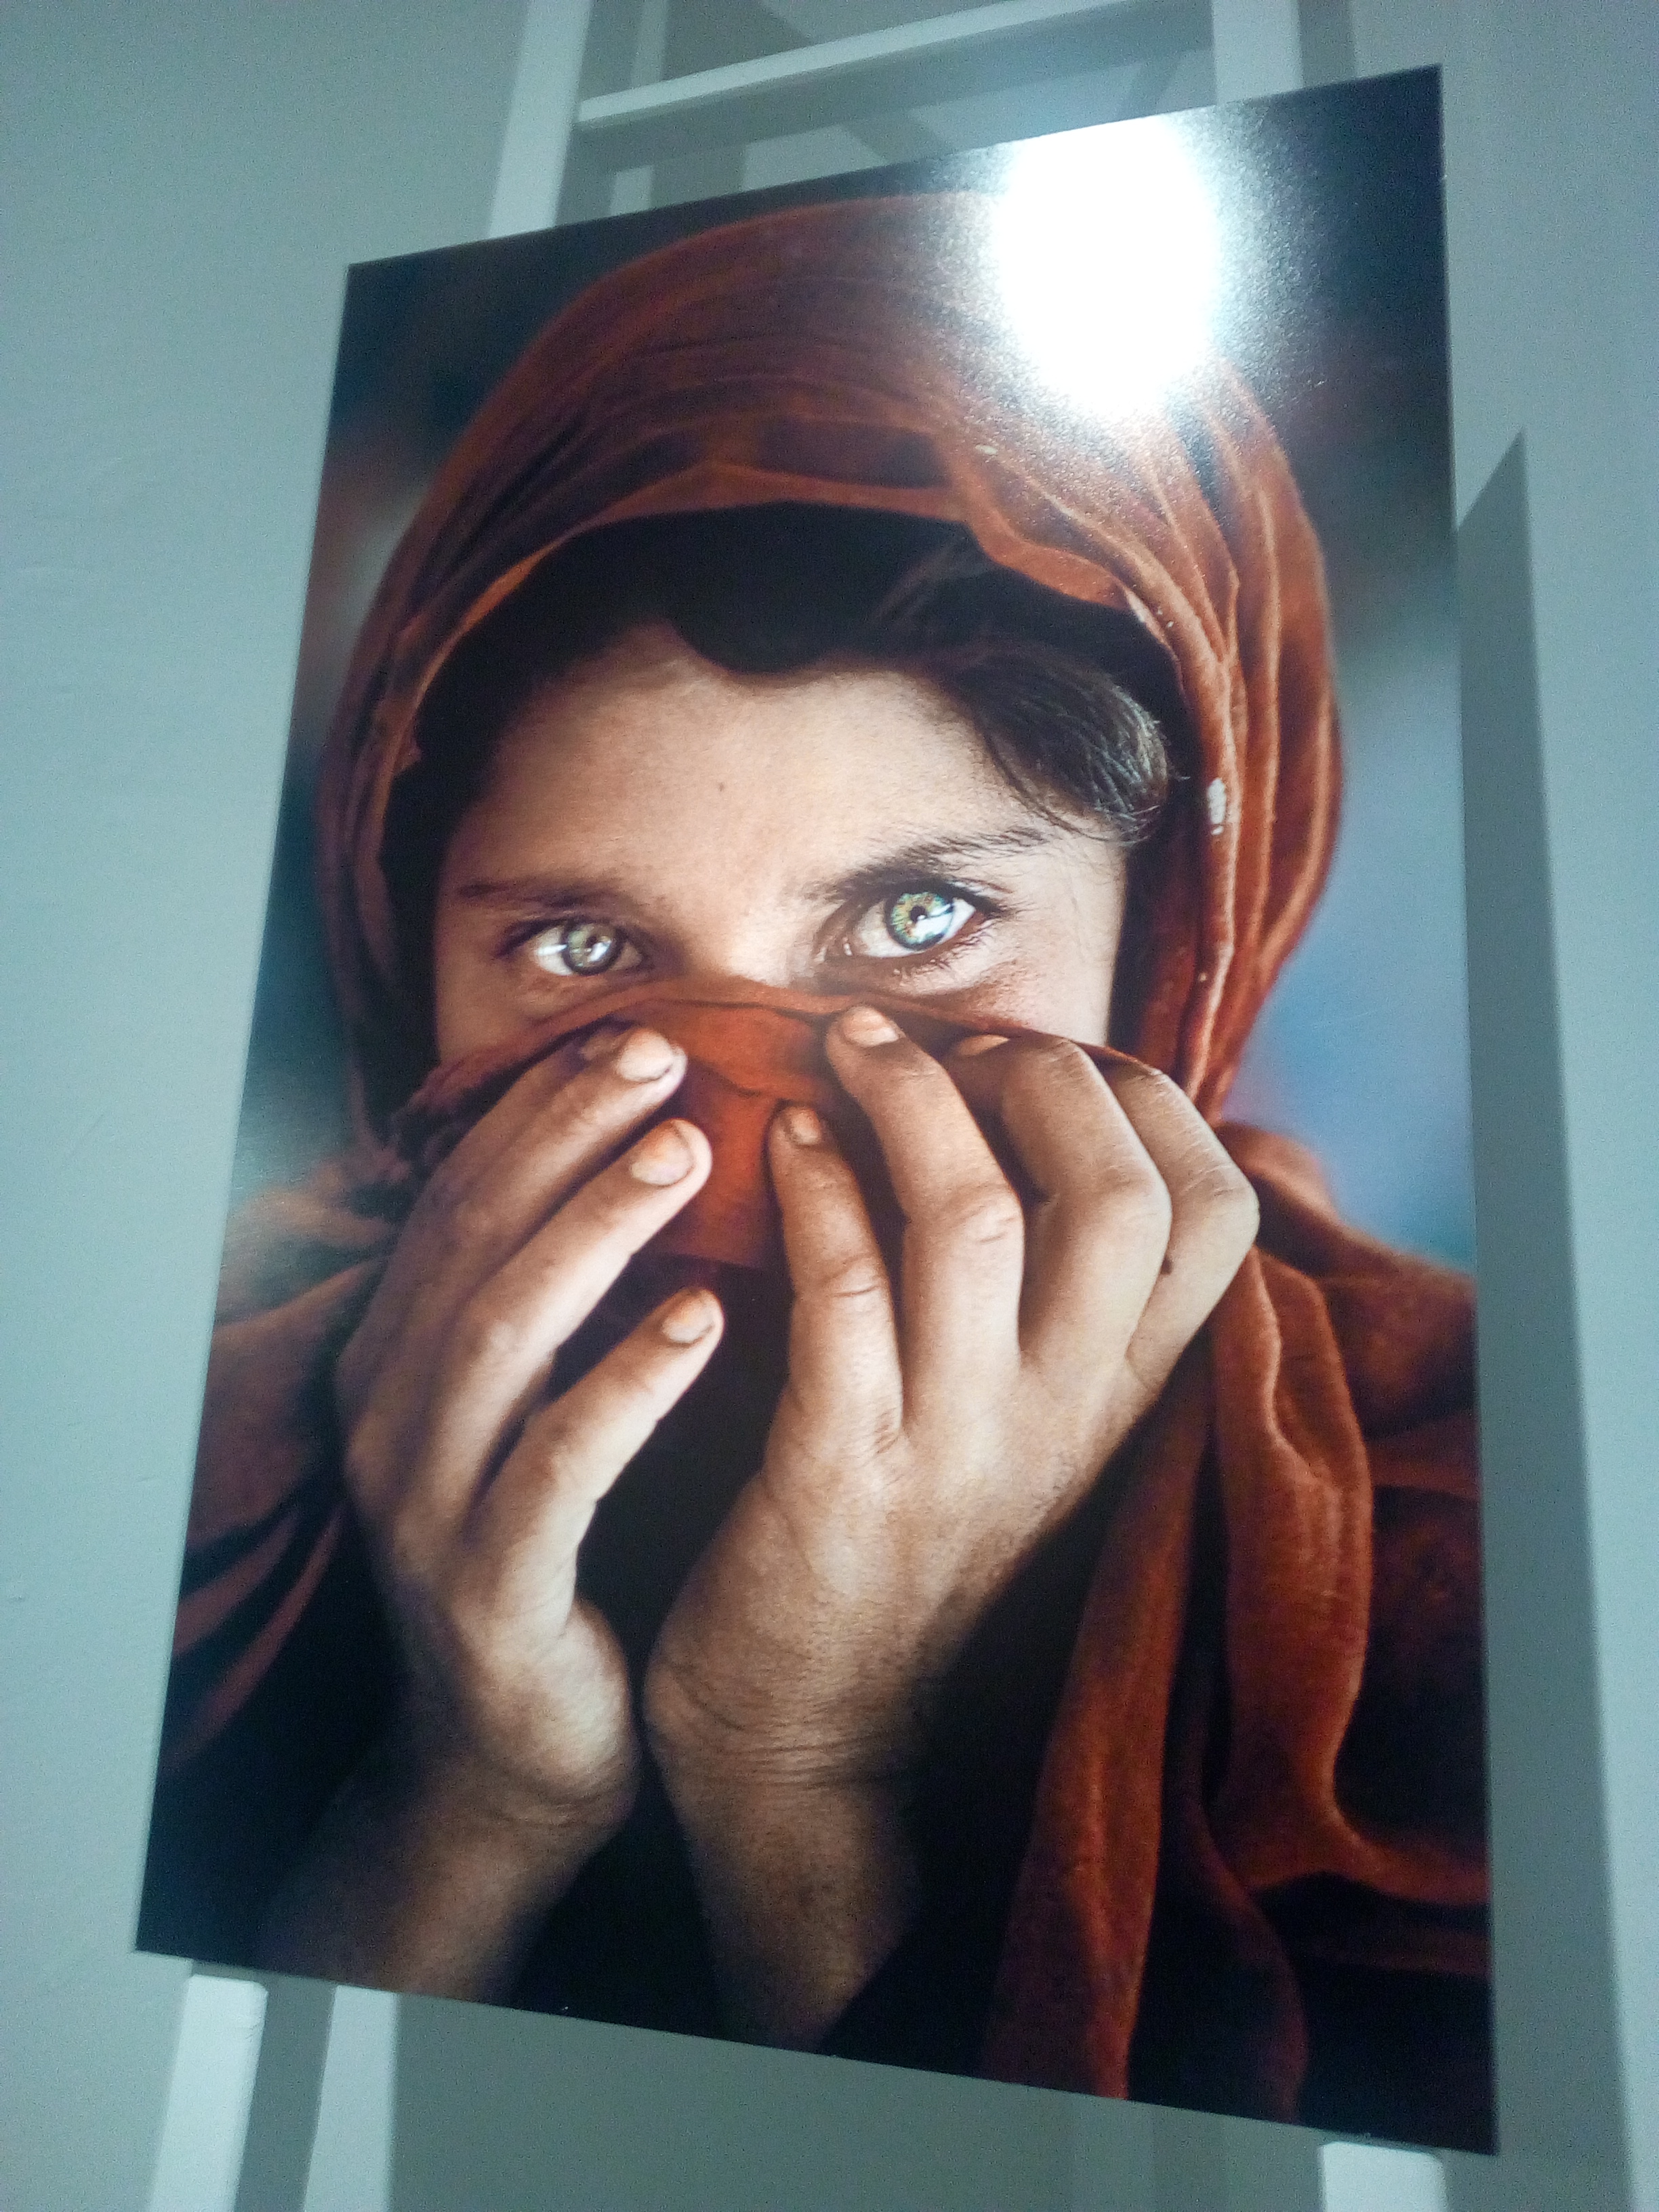 La ragazza afgana al PAN di Napoli, lo scatto che ha reso celebre Steve McCurry